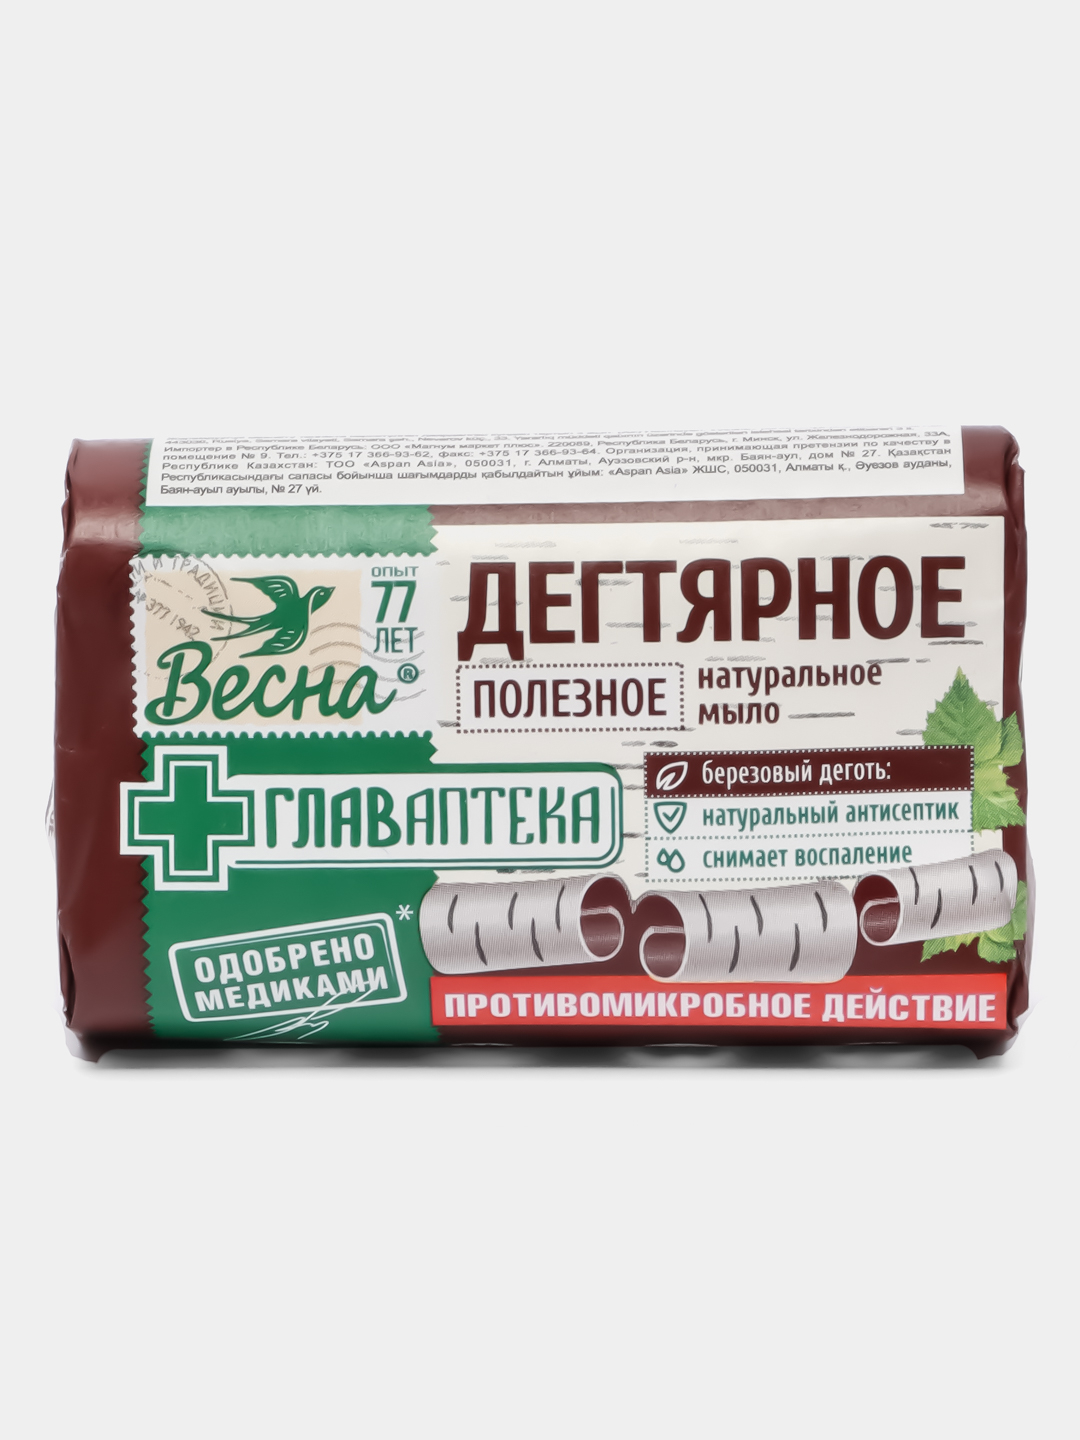 Мыло ручной работы «Березовый деготь» — купить в Москве, цена, характеристики, отзывы